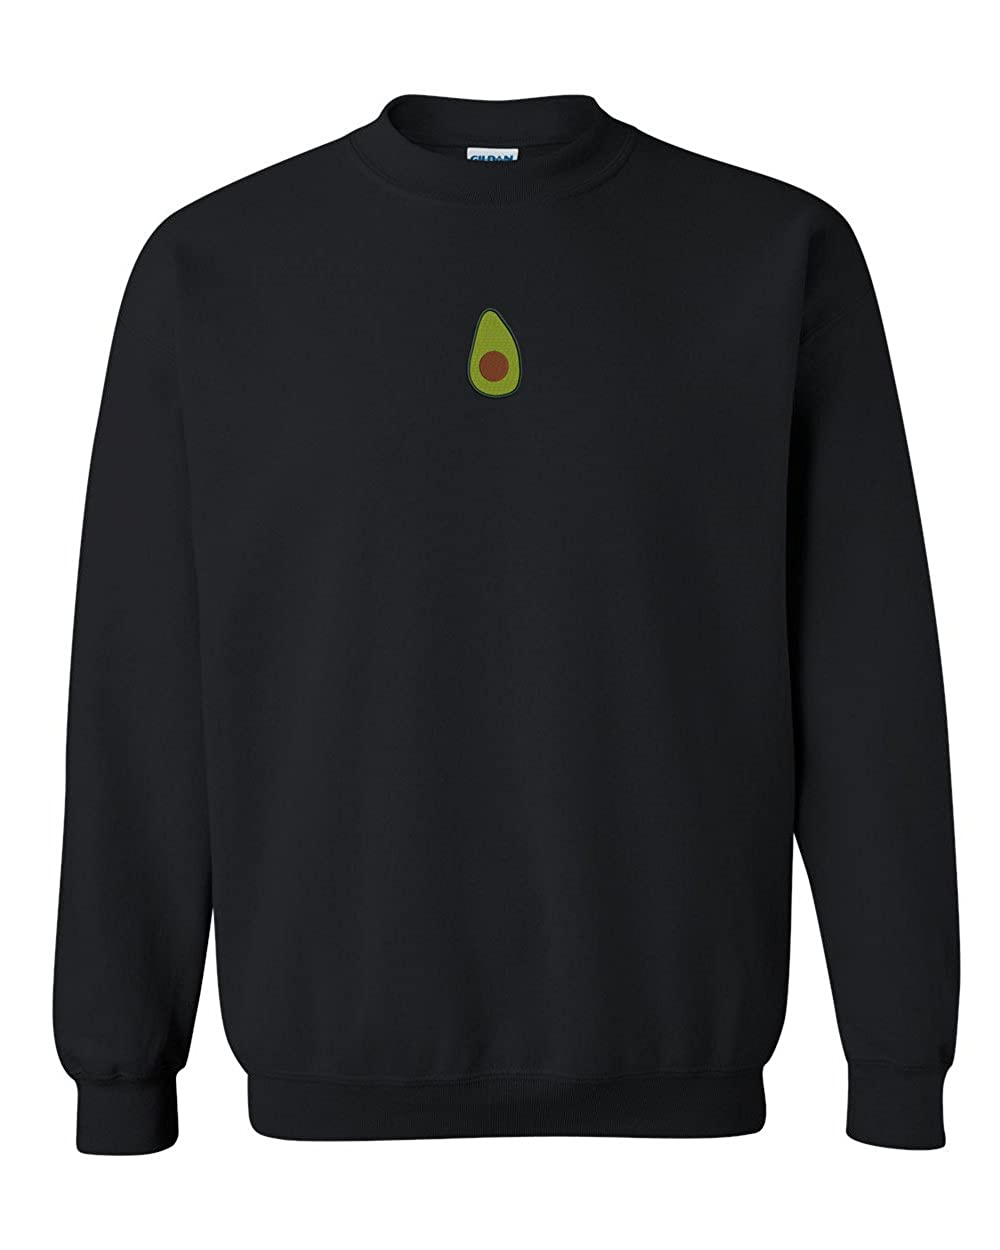 Trendy Apparel Shop Avocado Embroidered Crewneck Sweatshirt - Black - 2XL